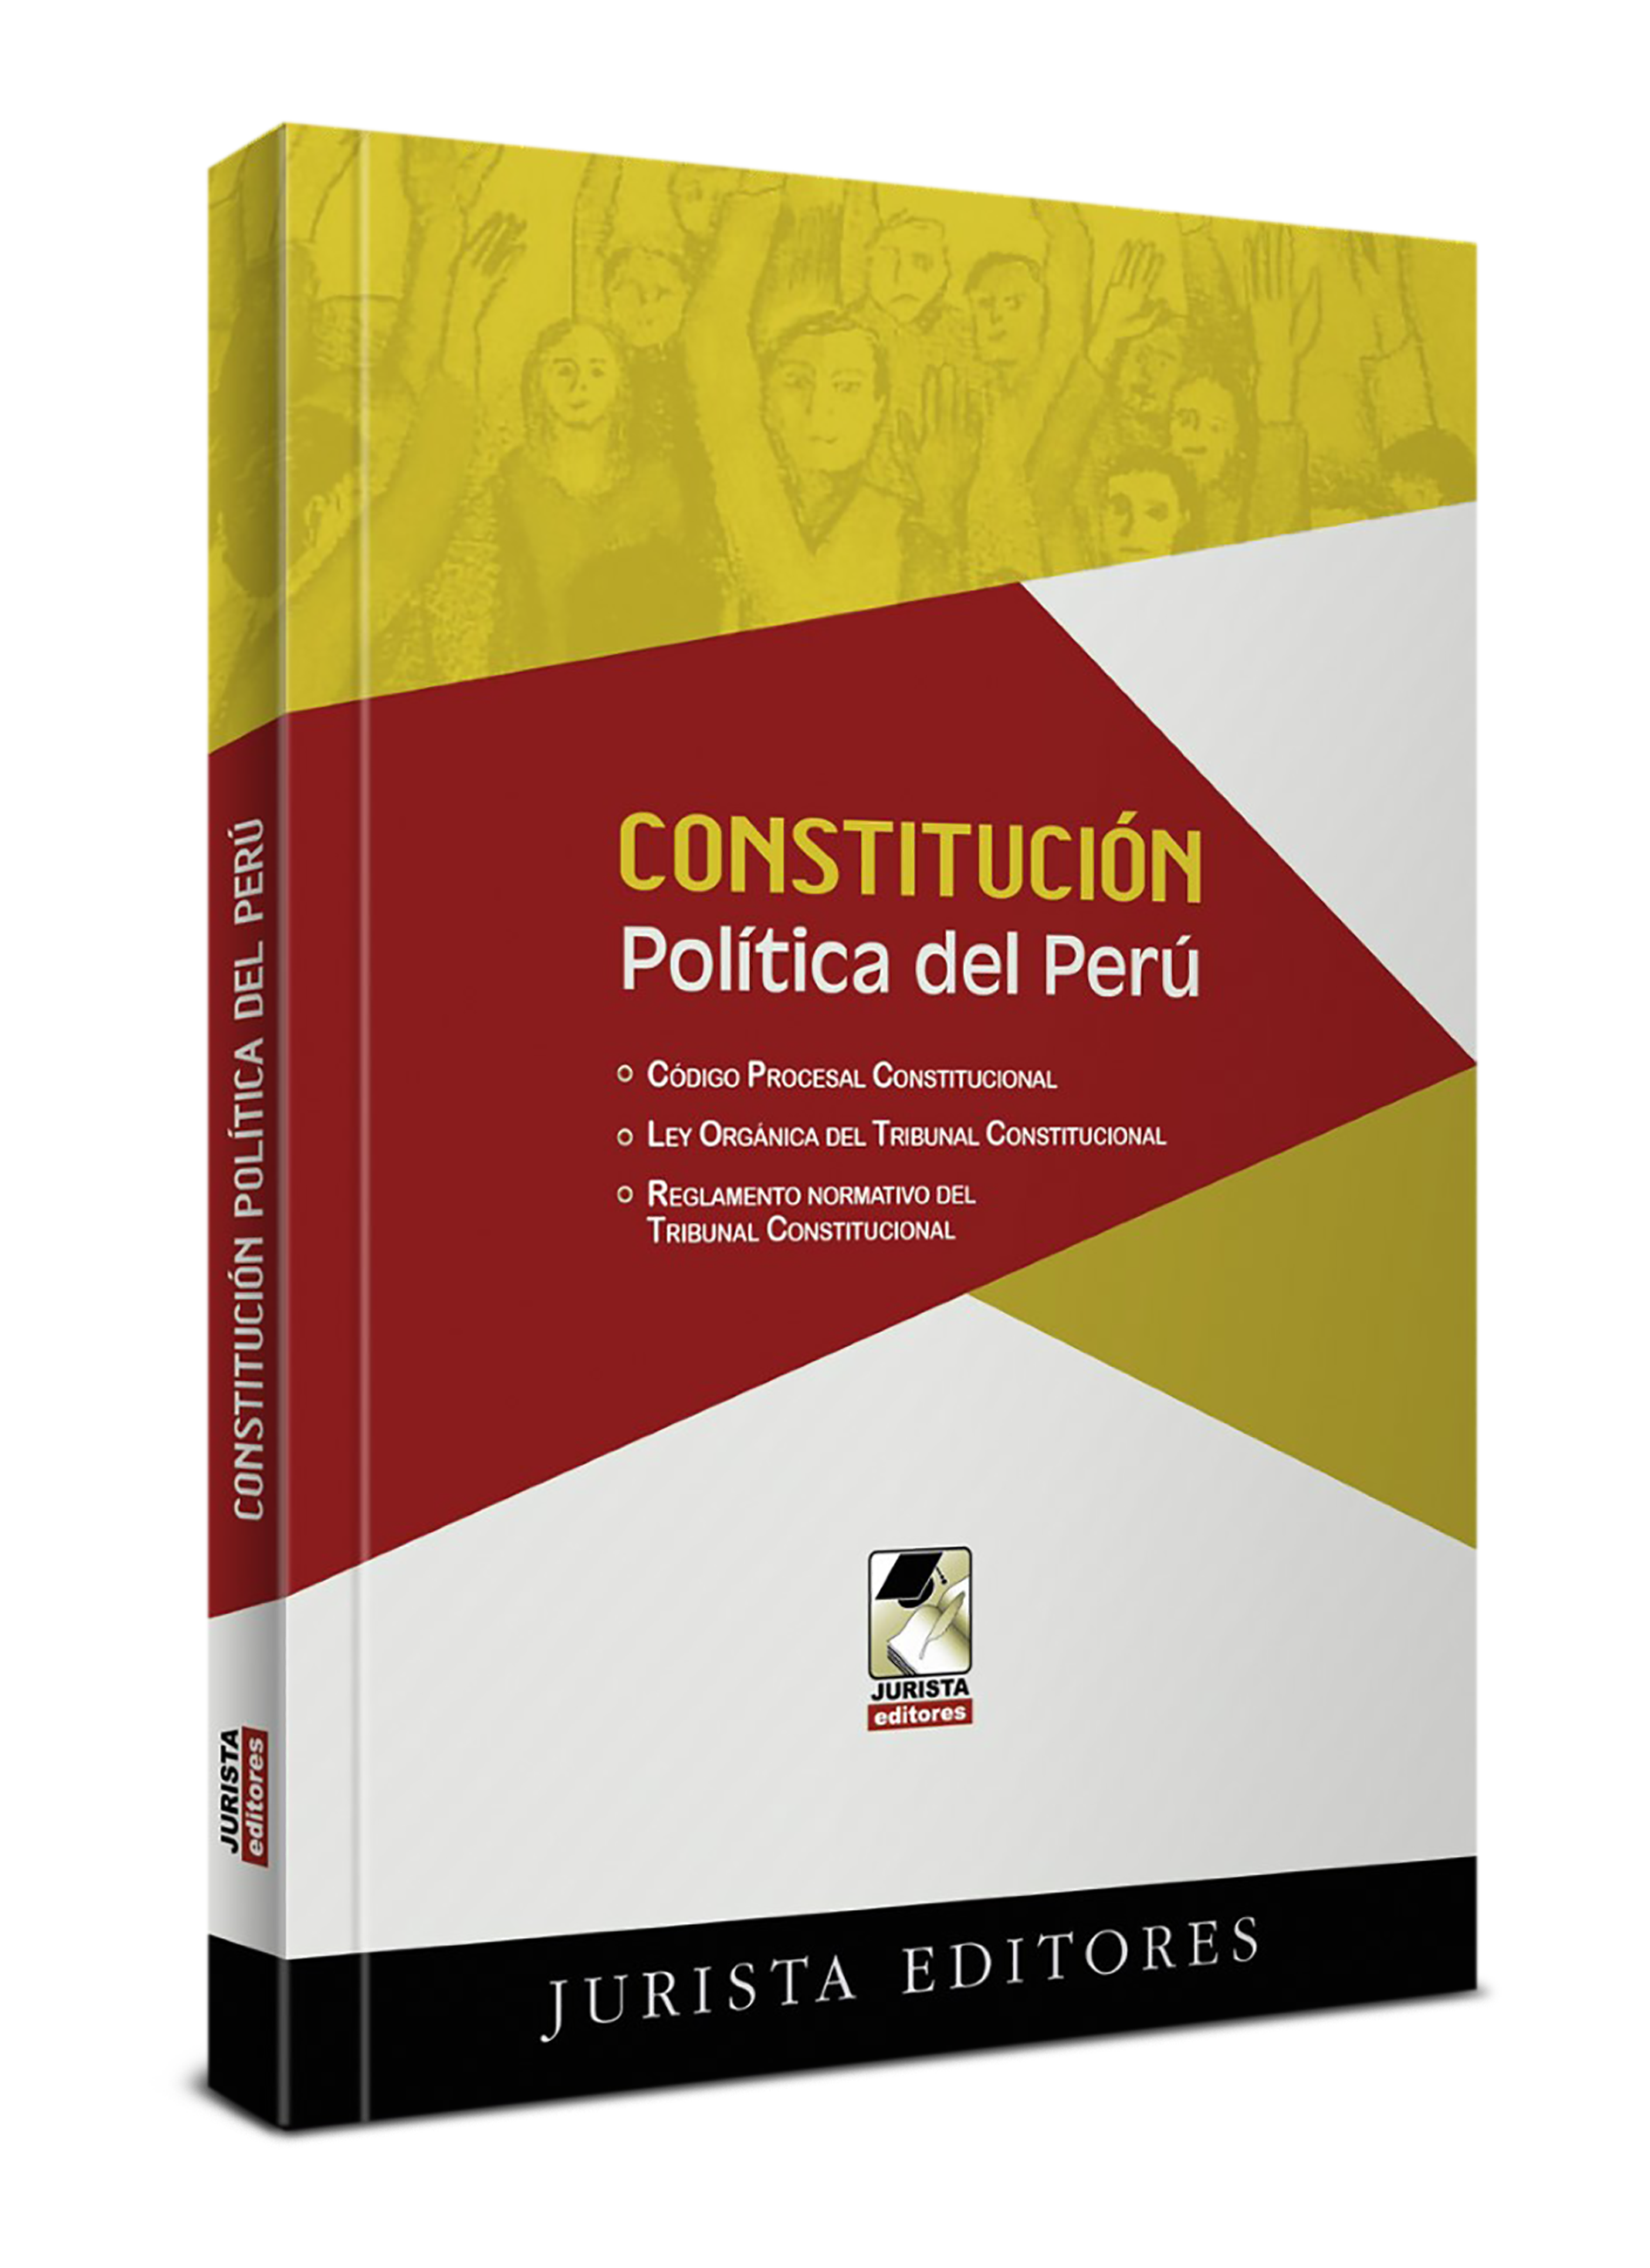 Constitución Política Del Perú